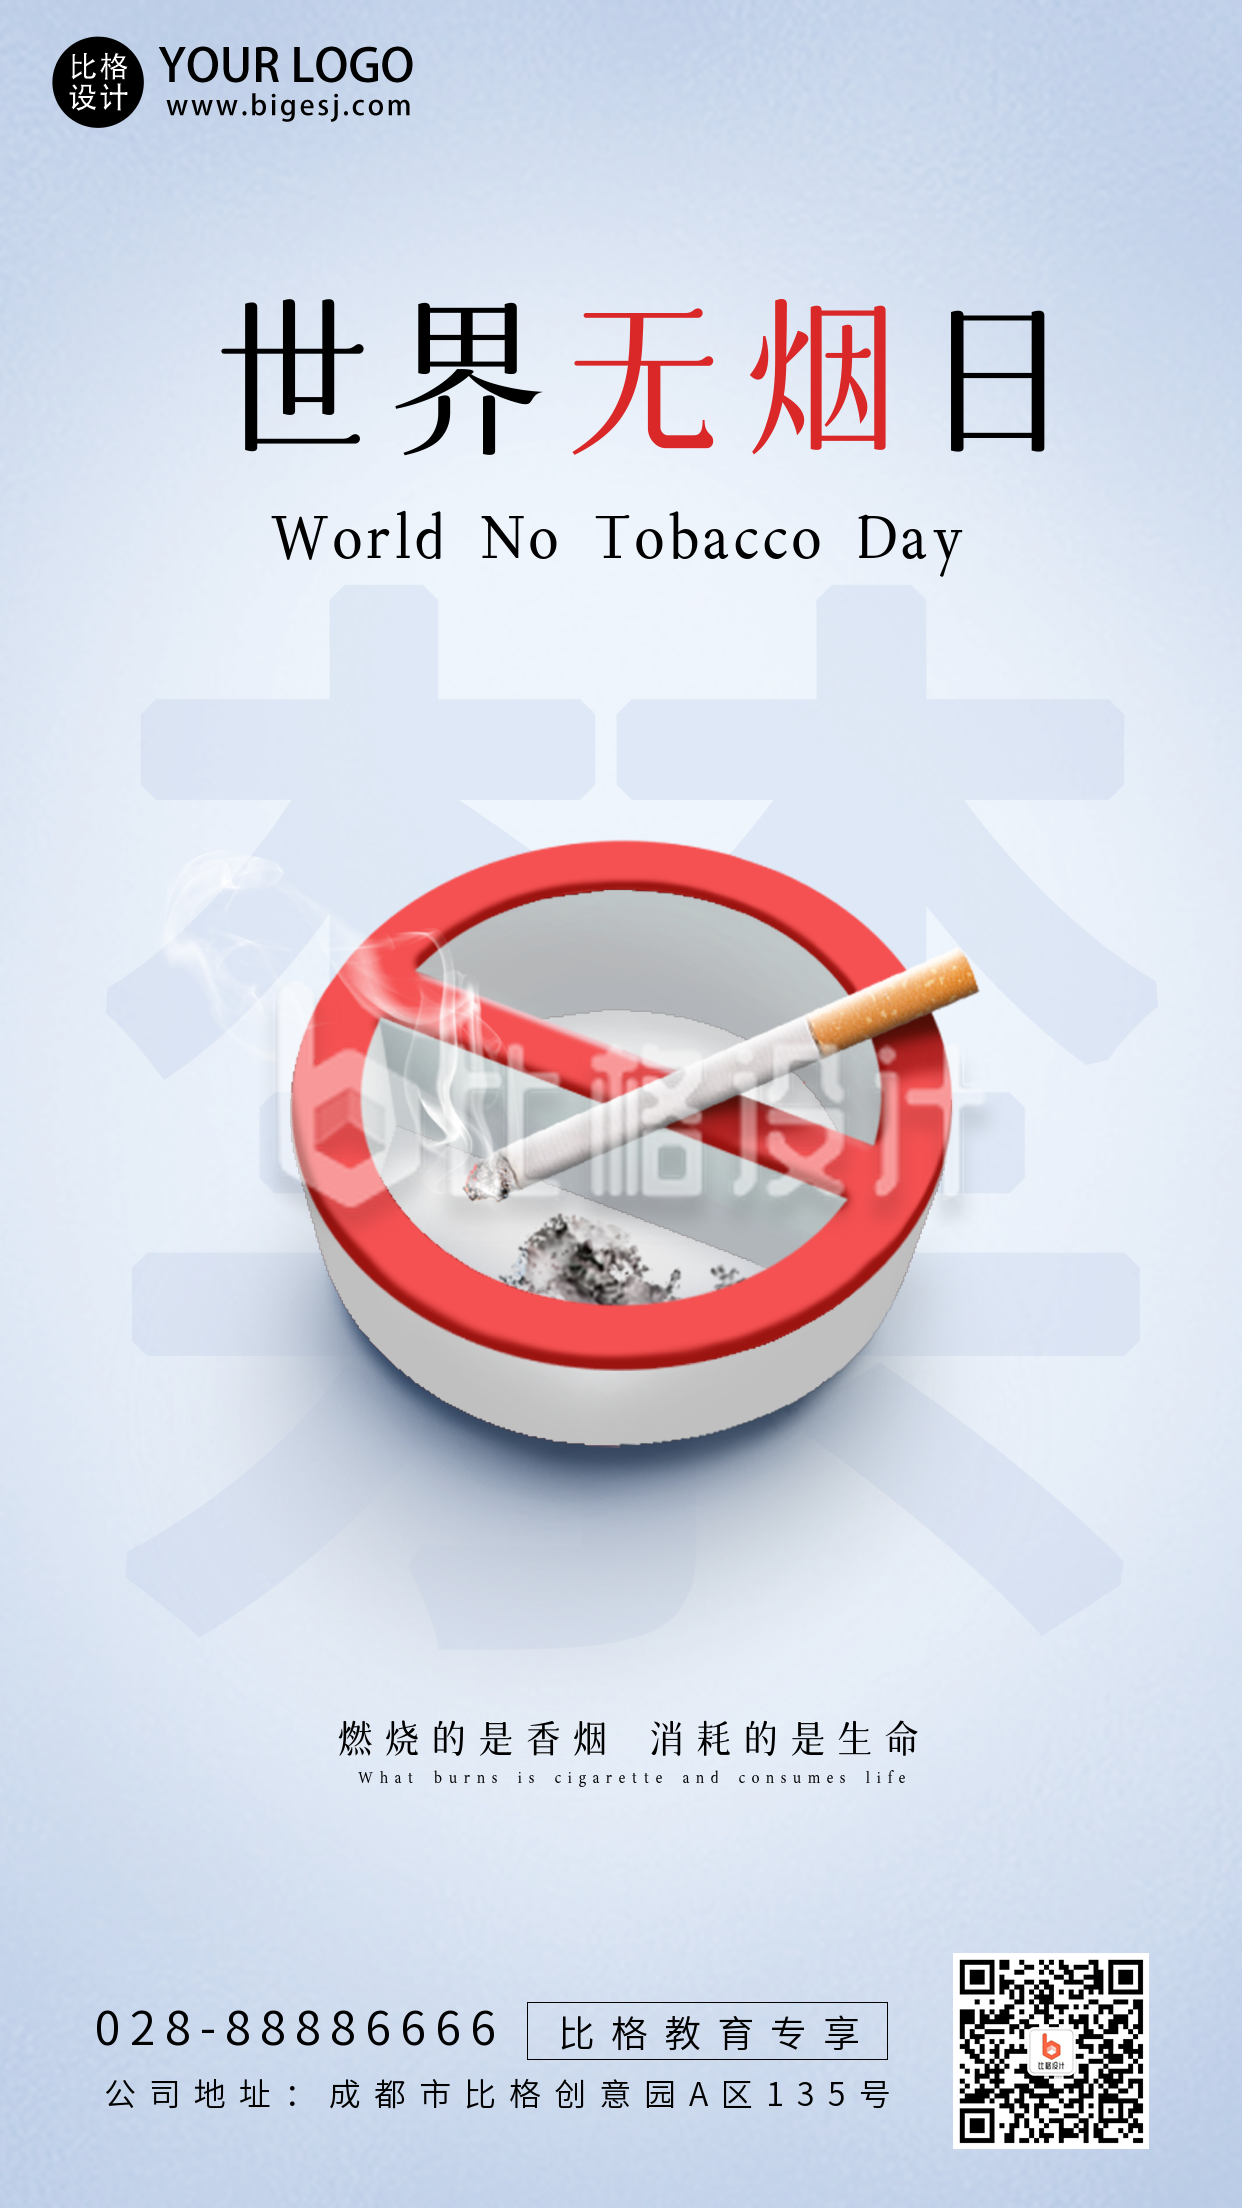 世界无烟日禁止吸烟文案宣传公益手机海报